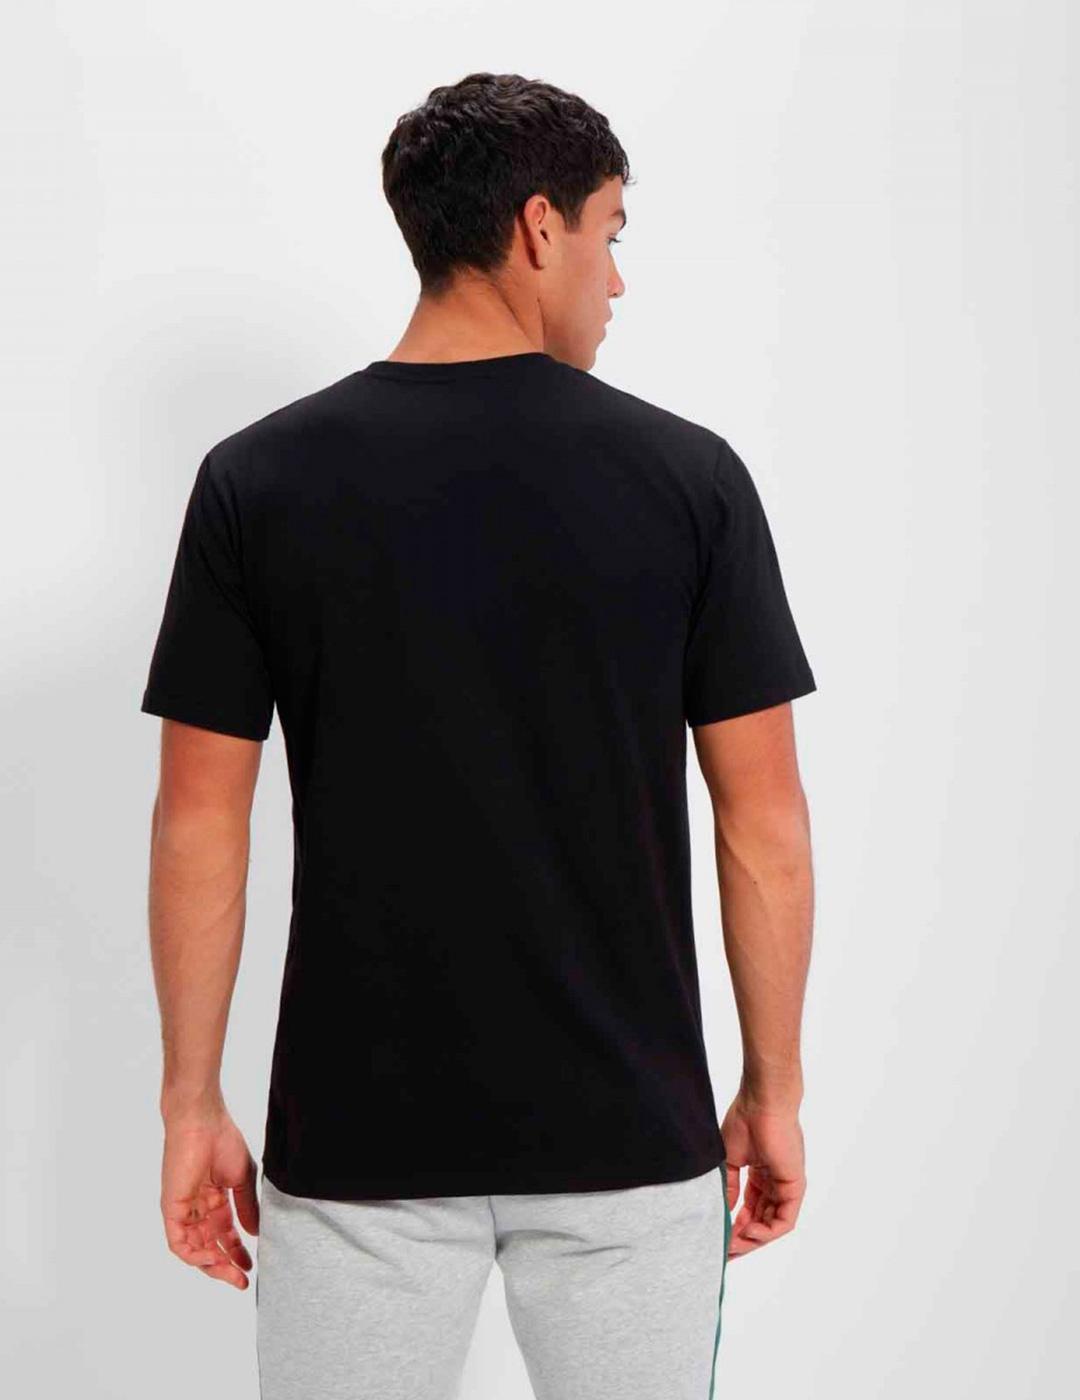 Camiseta Ellesse 'Aiden 2' Negro